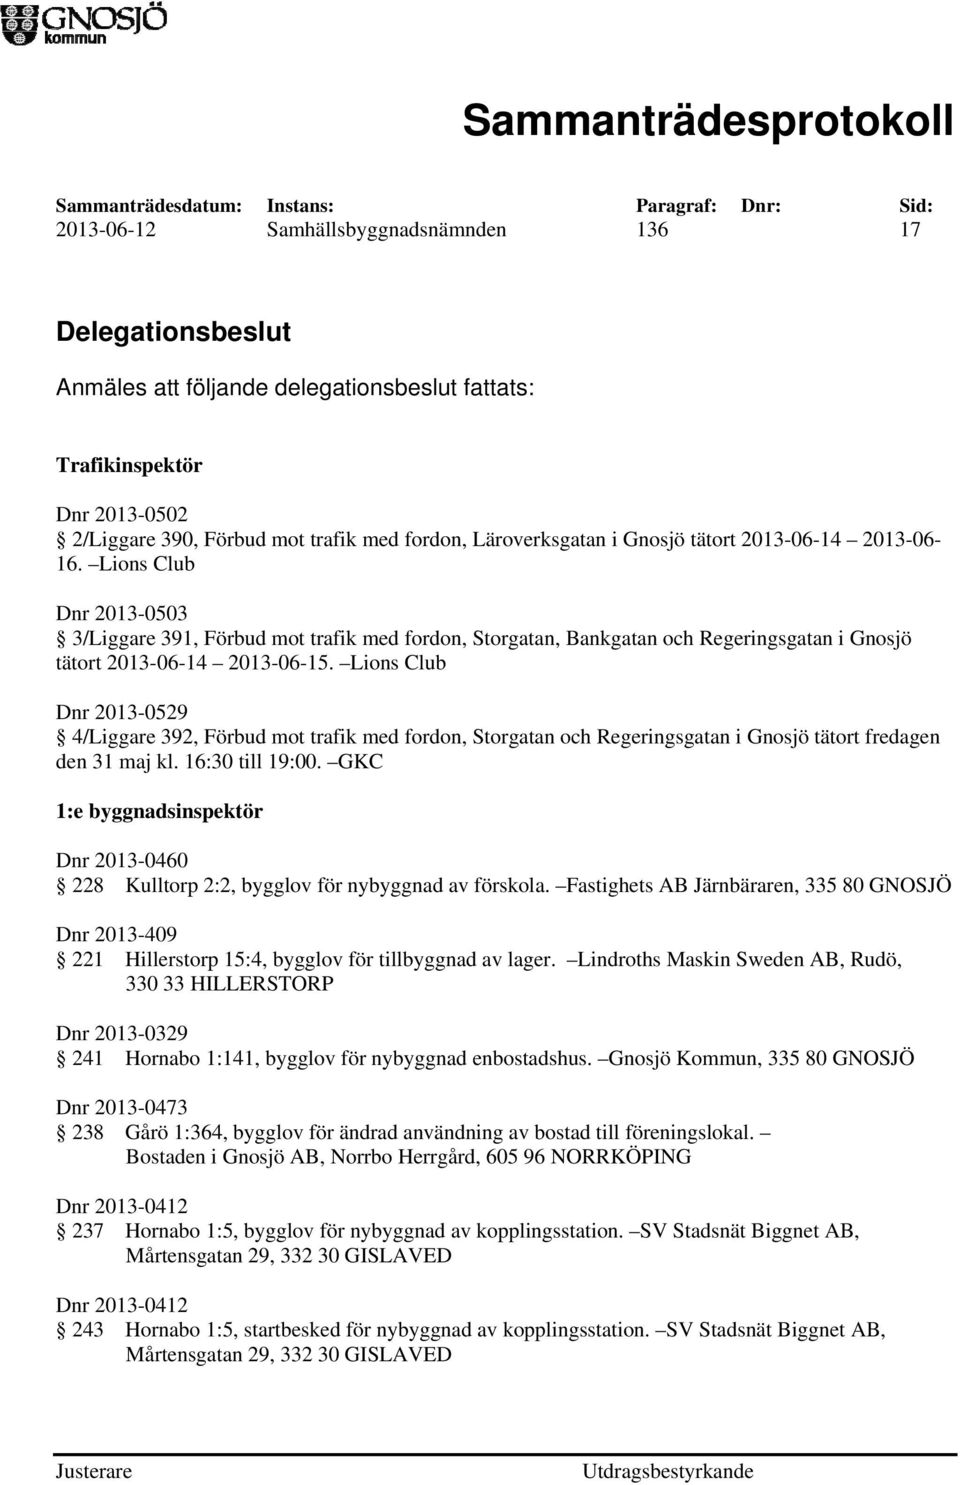 Lions Club Dnr 2013-0529 4/Liggare 392, Förbud mot trafik med fordon, Storgatan och Regeringsgatan i Gnosjö tätort fredagen den 31 maj kl. 16:30 till 19:00.